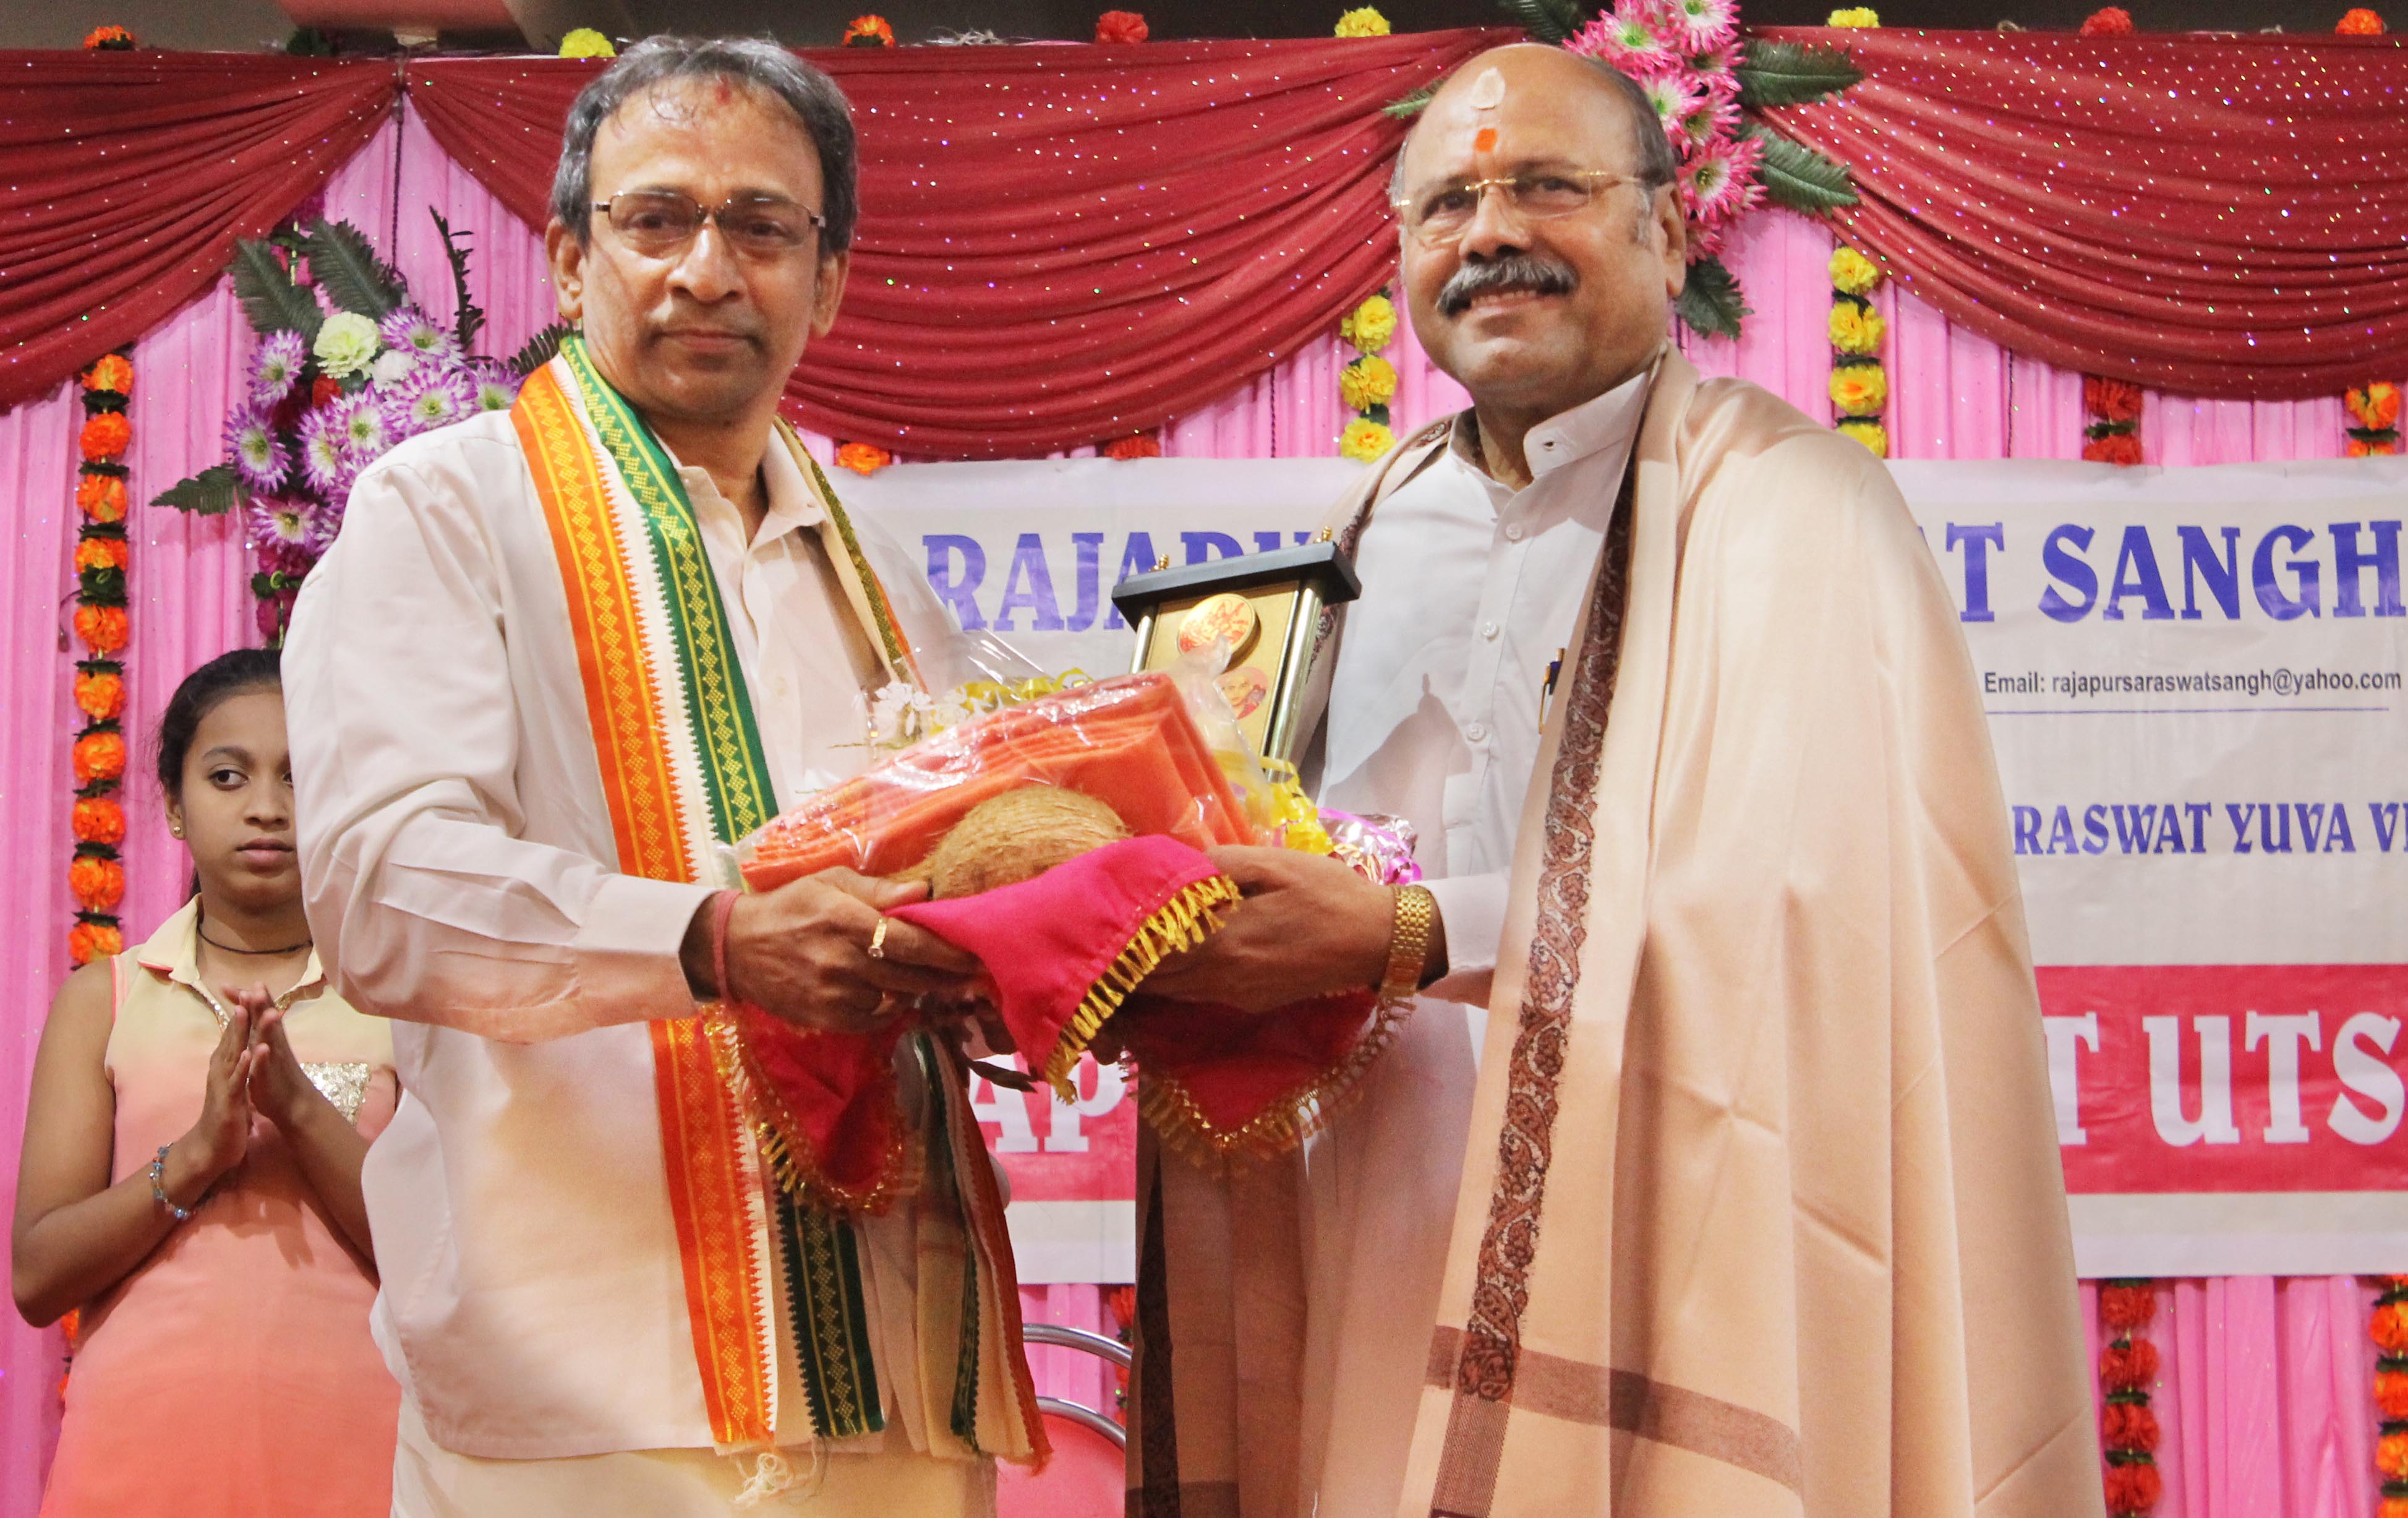 Mumbai: Rajapur Saraswath festival celebrated in Dahisar